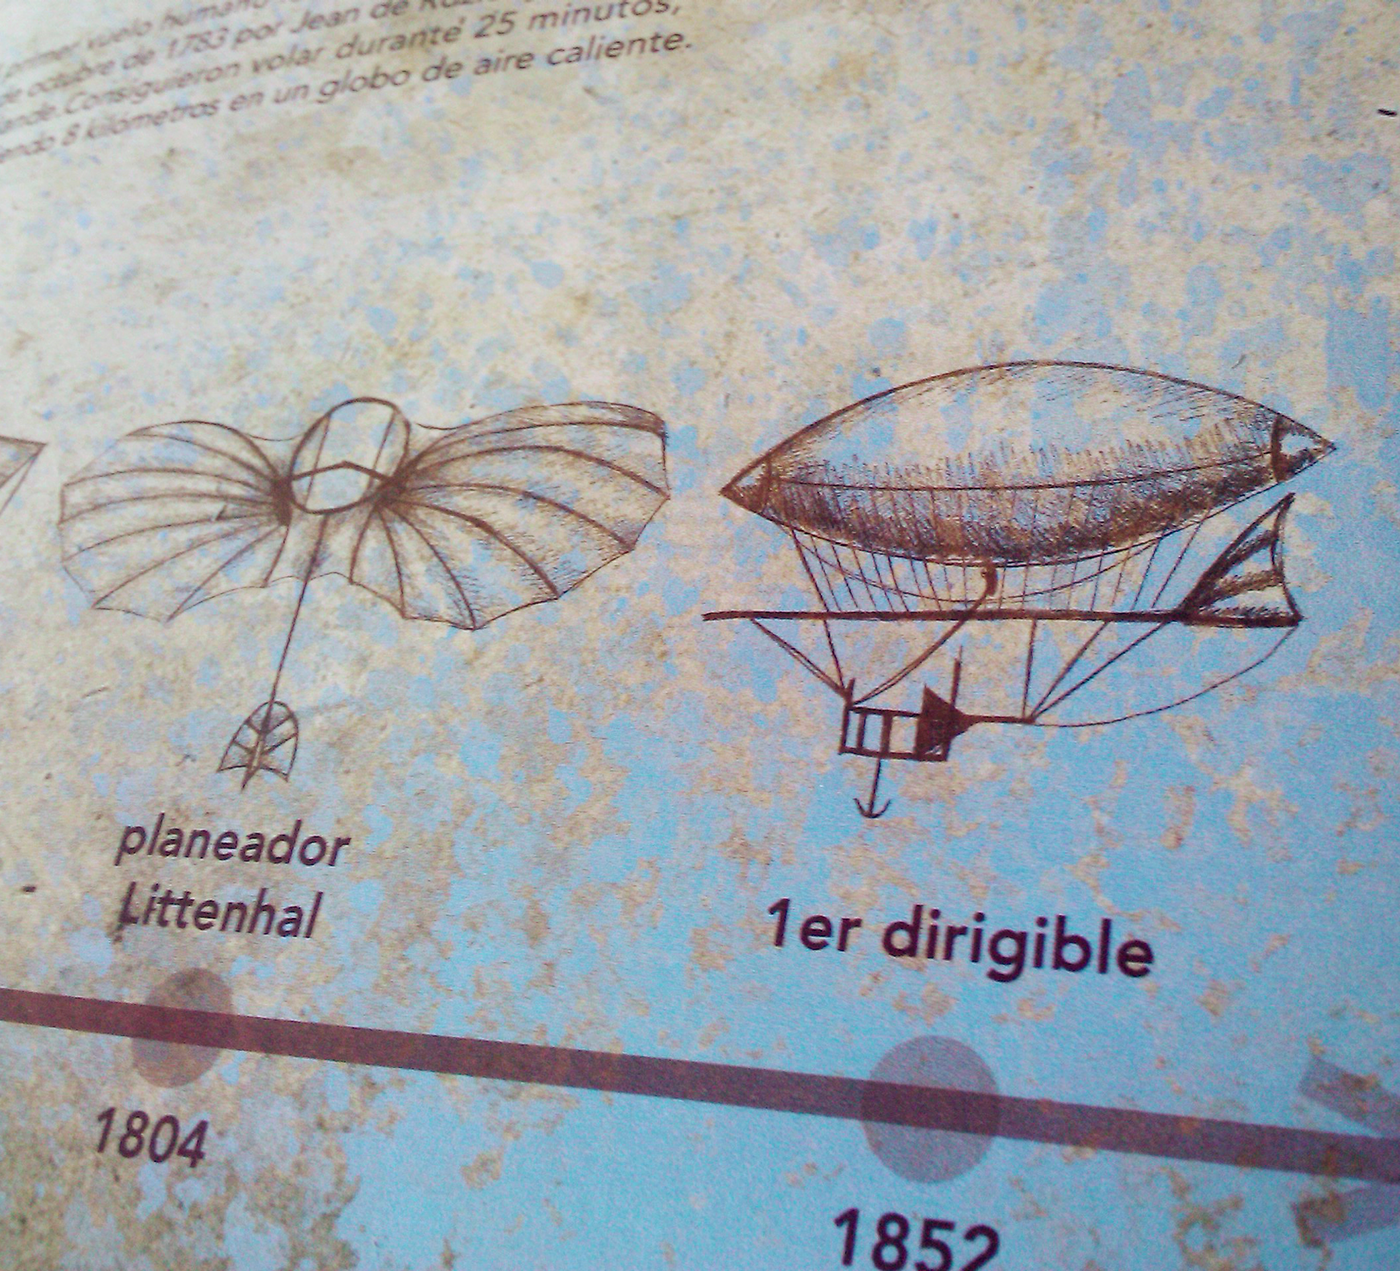 infografia  ilustración globos aerostaticos aviacion volar balloon aviation history hot air balloon infographics dirigibles airships